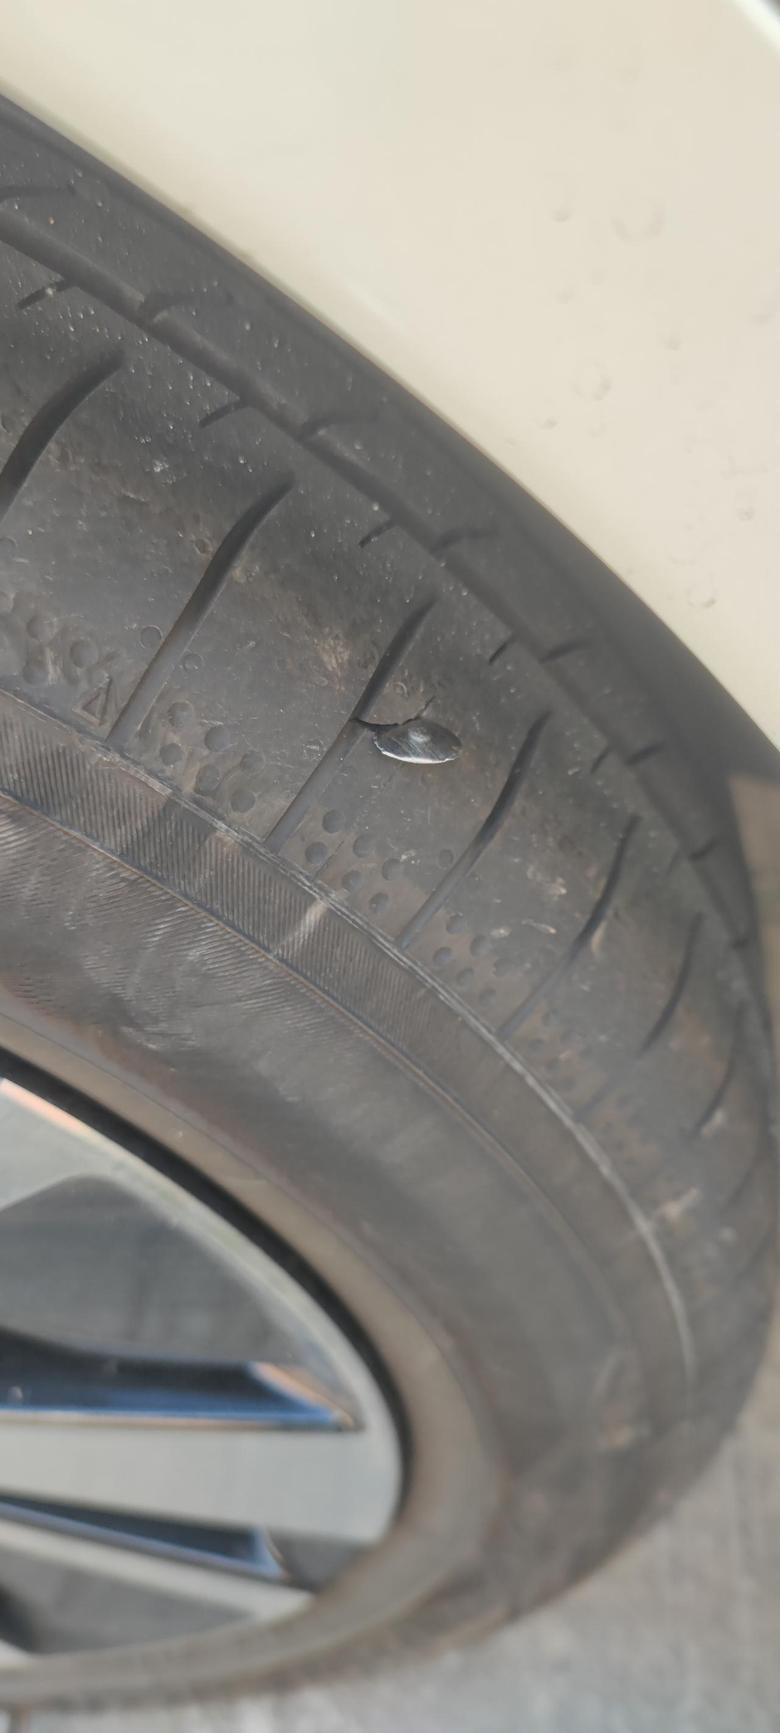 天籁 今天早上停车看看胎，发现一个小铝片把胎面给割破了。但是轮胎没有漏气。胎压还是正常的。想问问各位大佬的看法，需不需要换胎。还有就是舒适籁子的原厂胎的规格是什么吗？感谢！